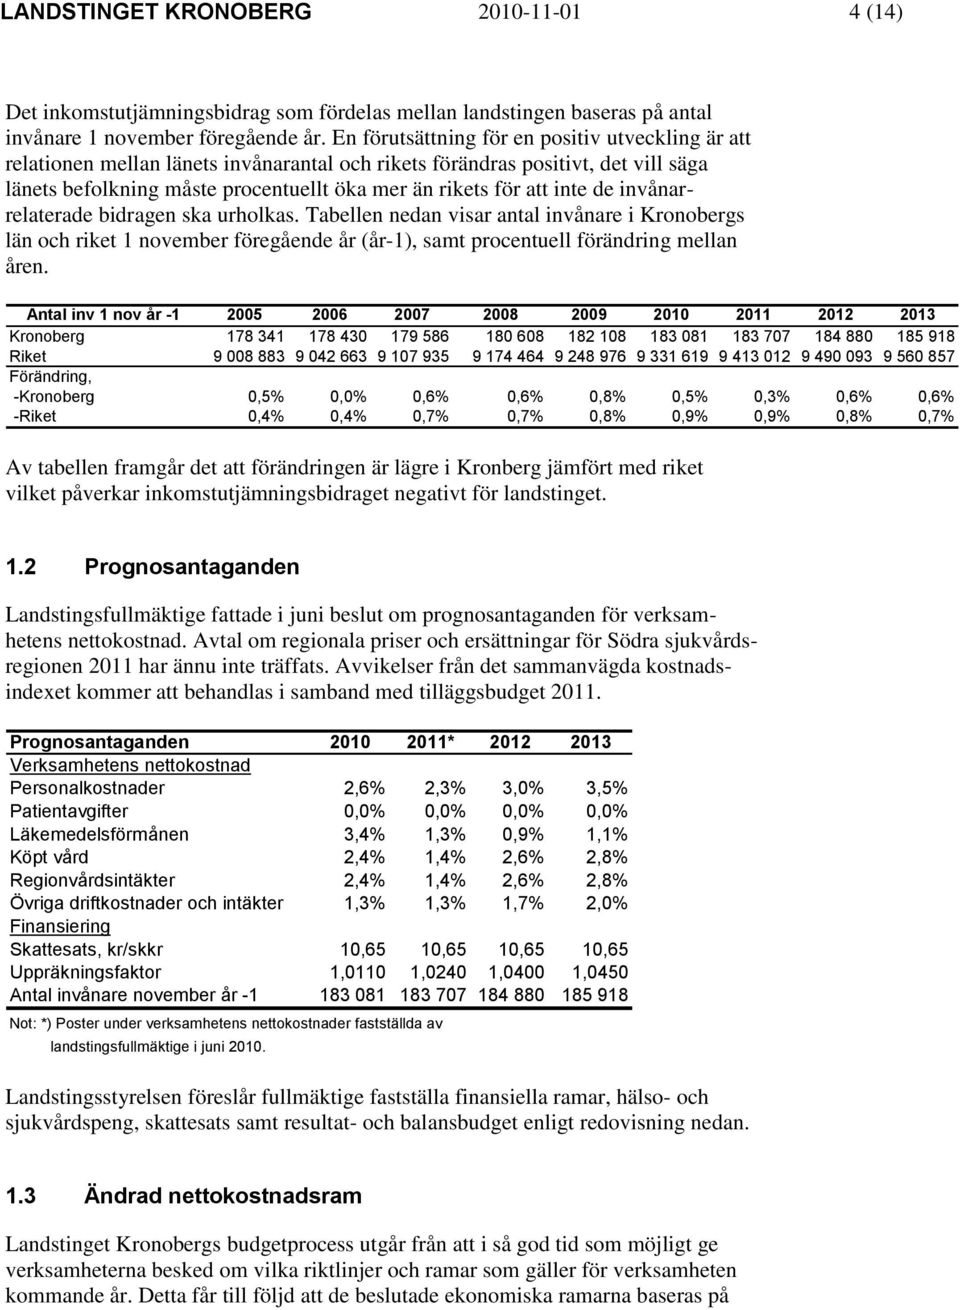 inte de invånarrelaterade bidragen ska urholkas. Tabellen nedan visar antal invånare i Kronobergs län och riket 1 november föregående år (år-1), samt procentuell förändring mellan åren.